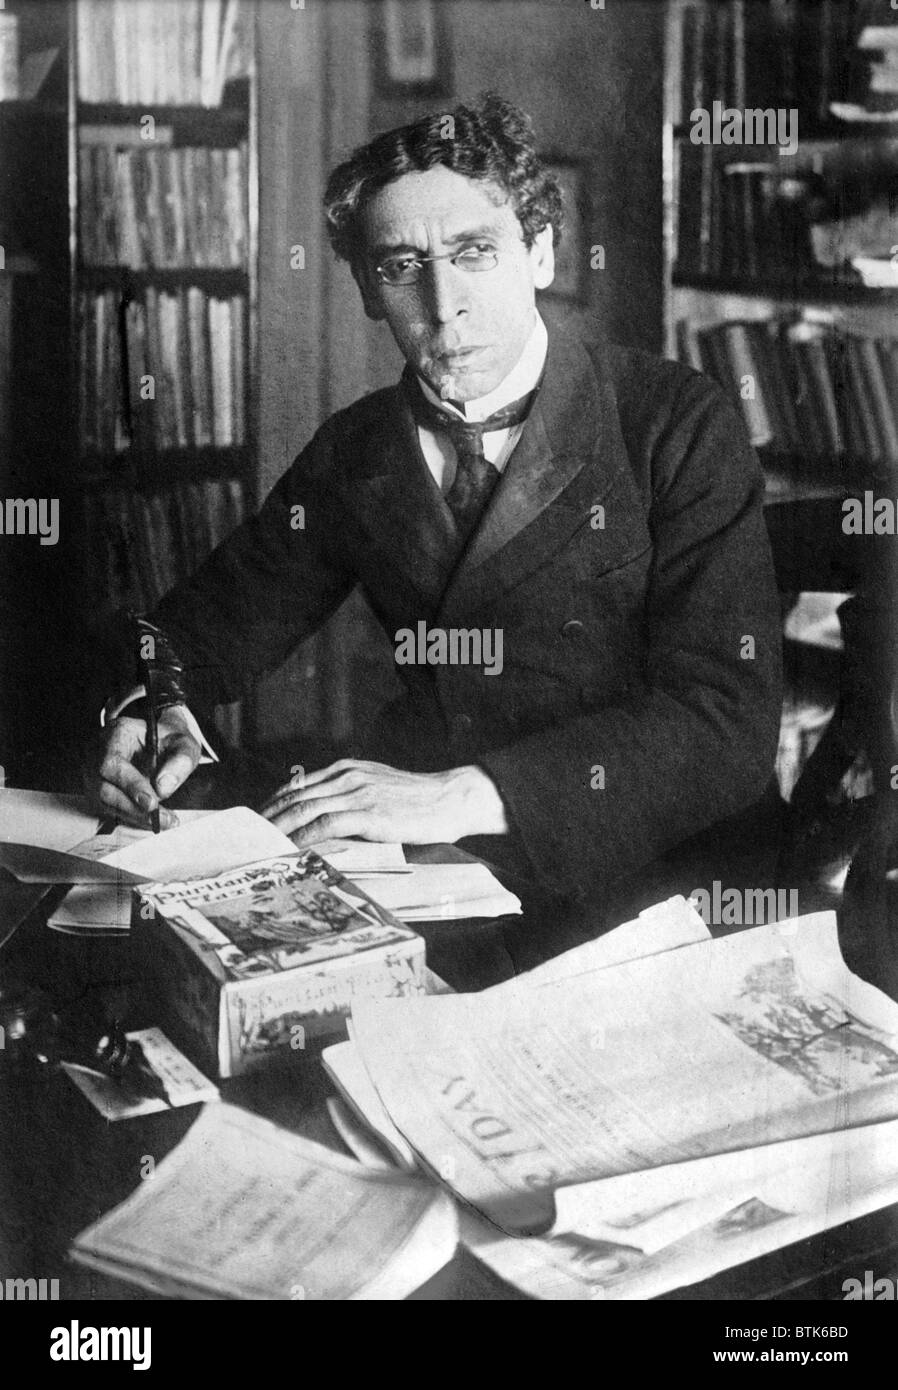 Israel Zangwill (1864-1926), englische jüdische Schriftsteller und Dramatiker. Autor von "The Melting Pot". Foto ca. 1905 Stockfoto